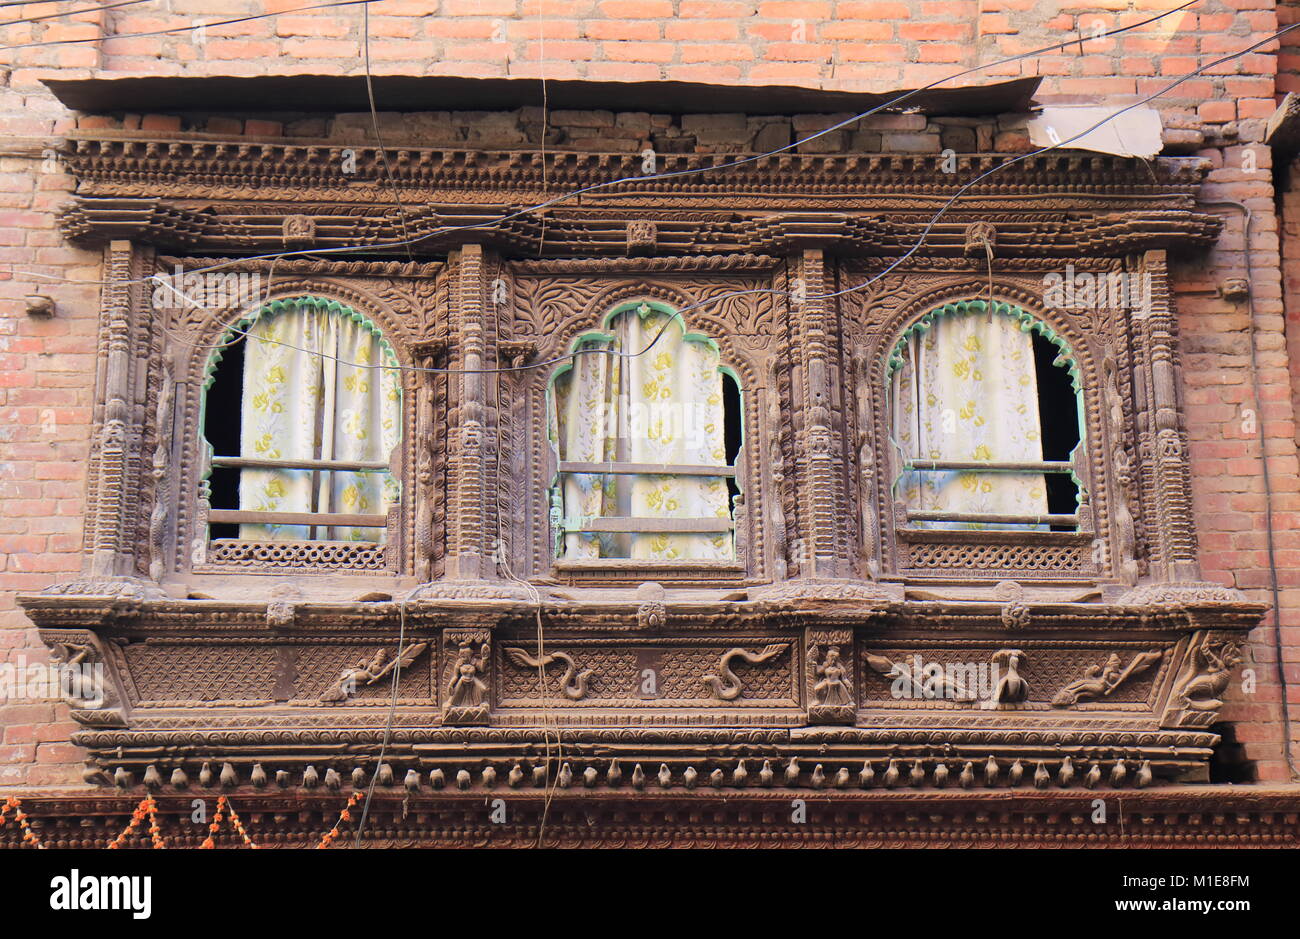 Architecture bâtiment historique au Népal Katmandou Banque D'Images